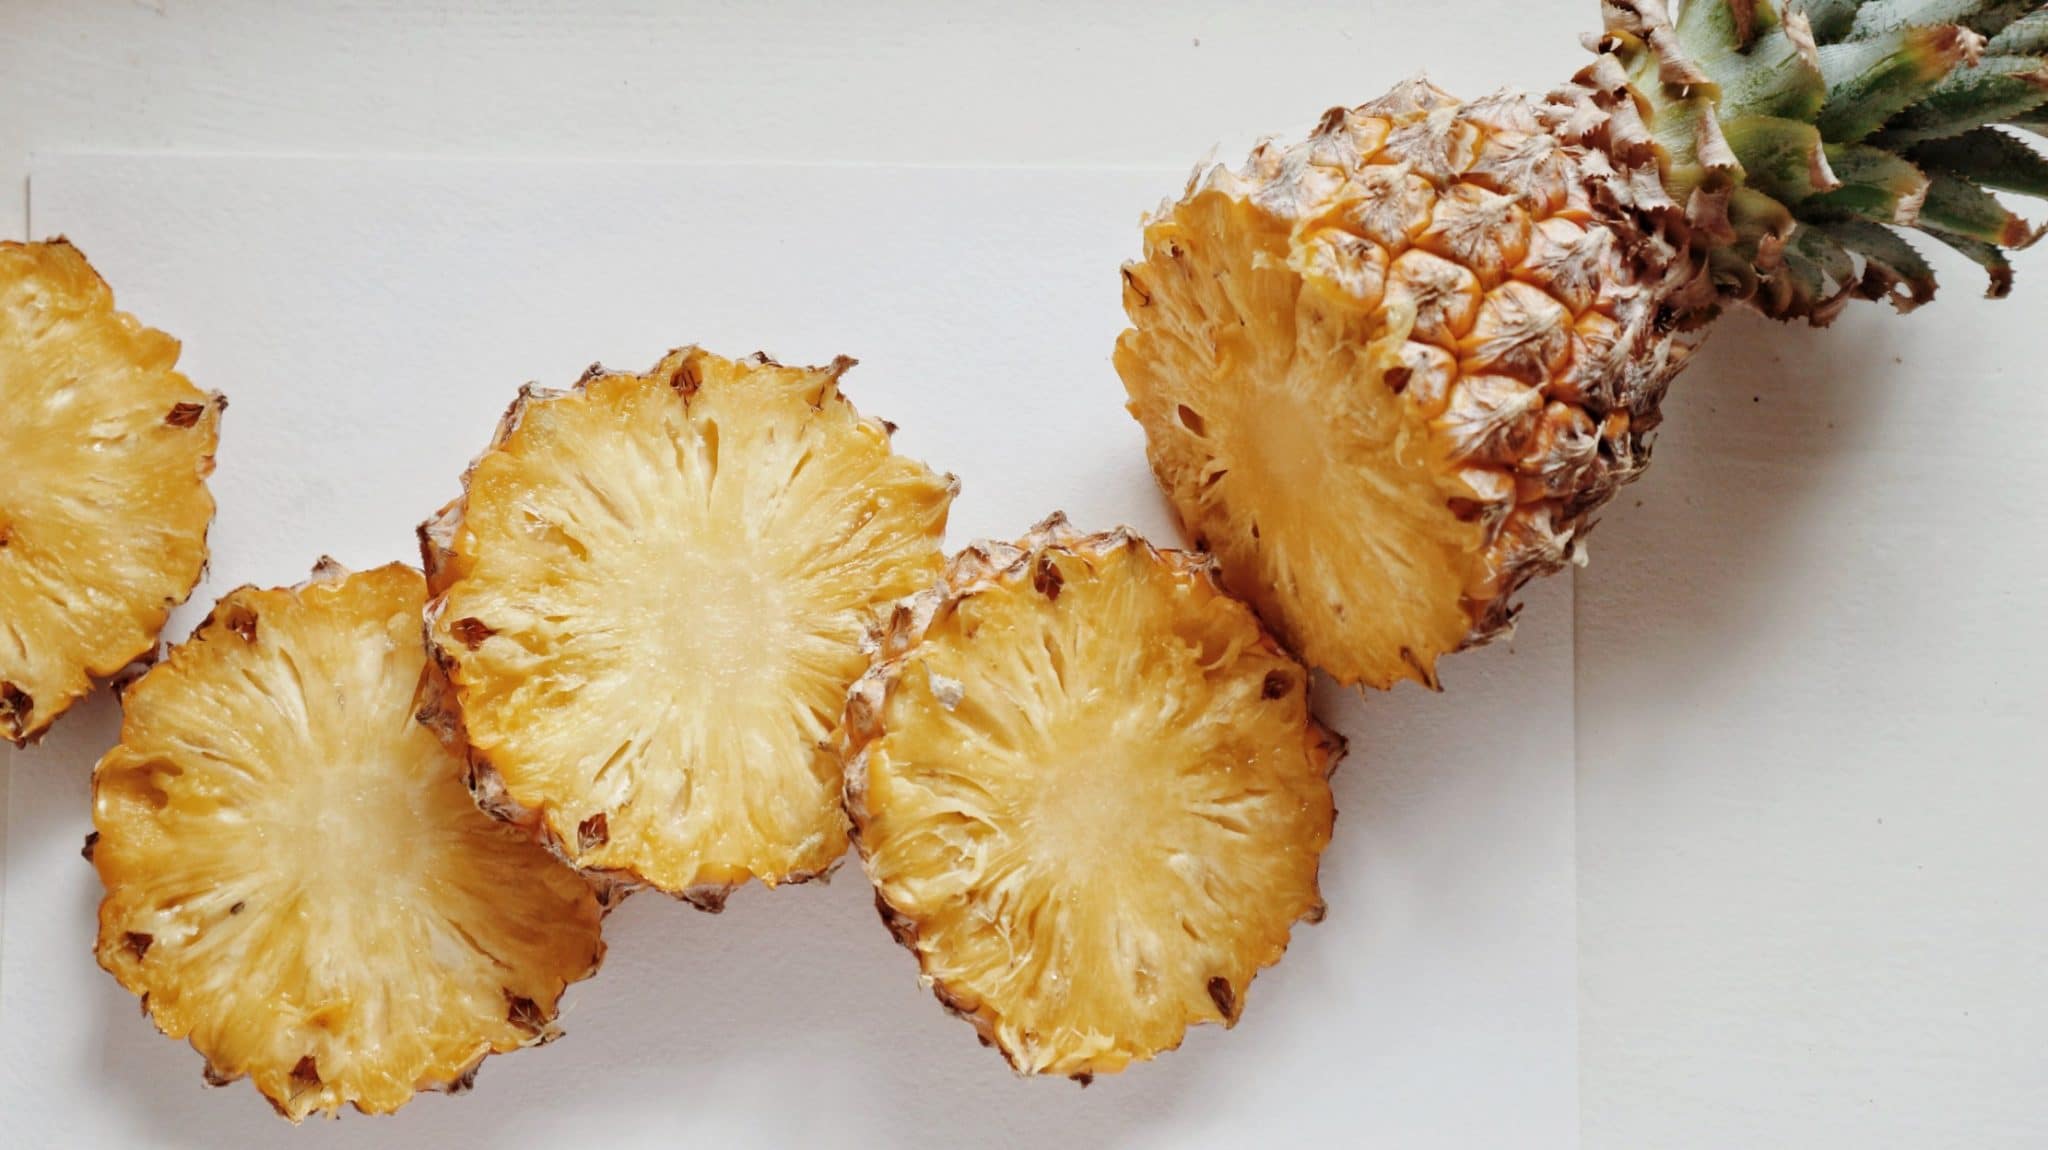 Morceaux d'ananas tranchés disposés à côté d'un ananas entier sur une surface claire.